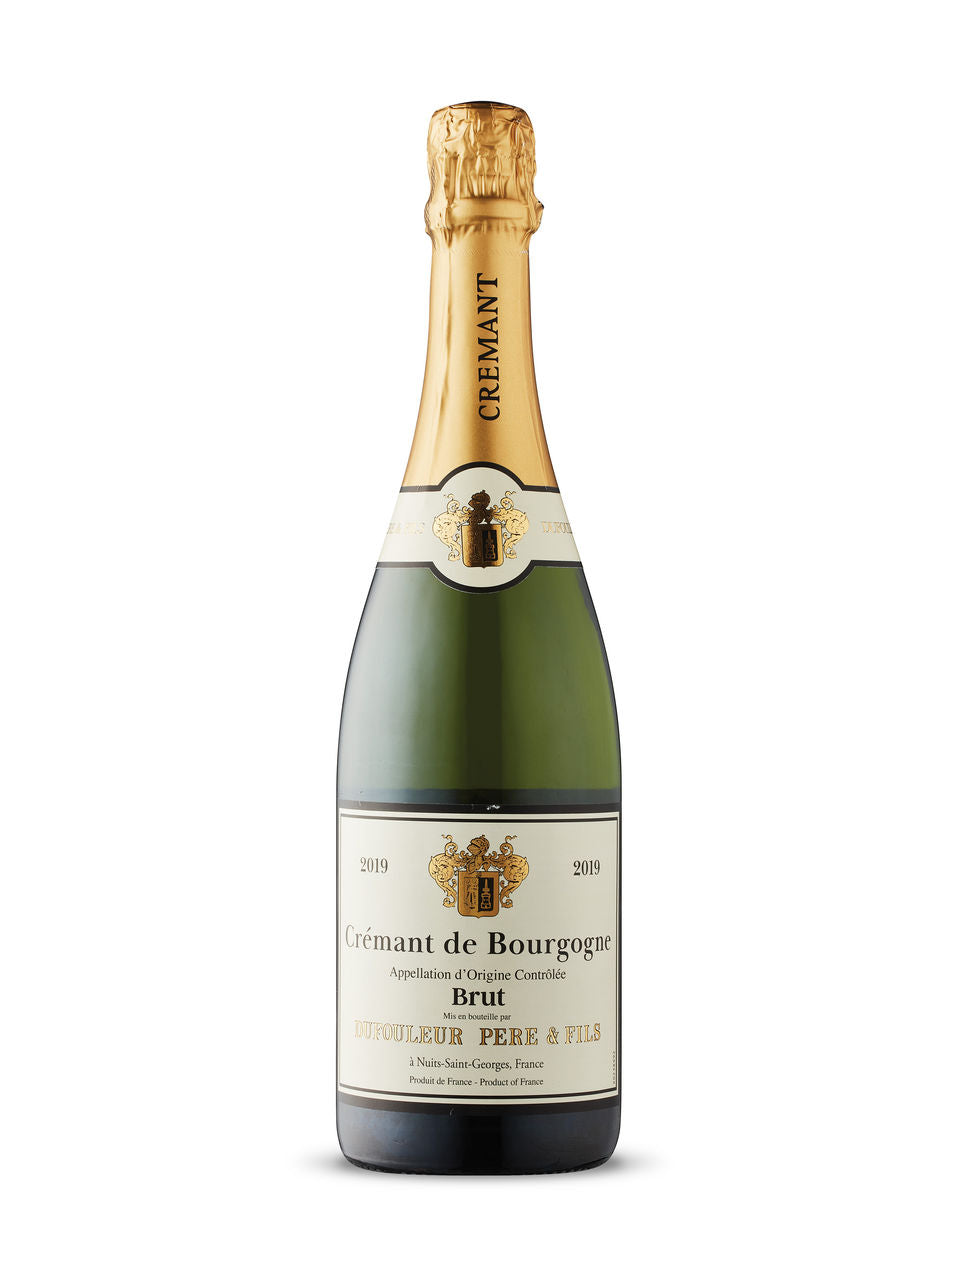 Dufouleur Père & Fils Brut Crémant de Bourgogne 2019 750 ml bottle VINTAGES